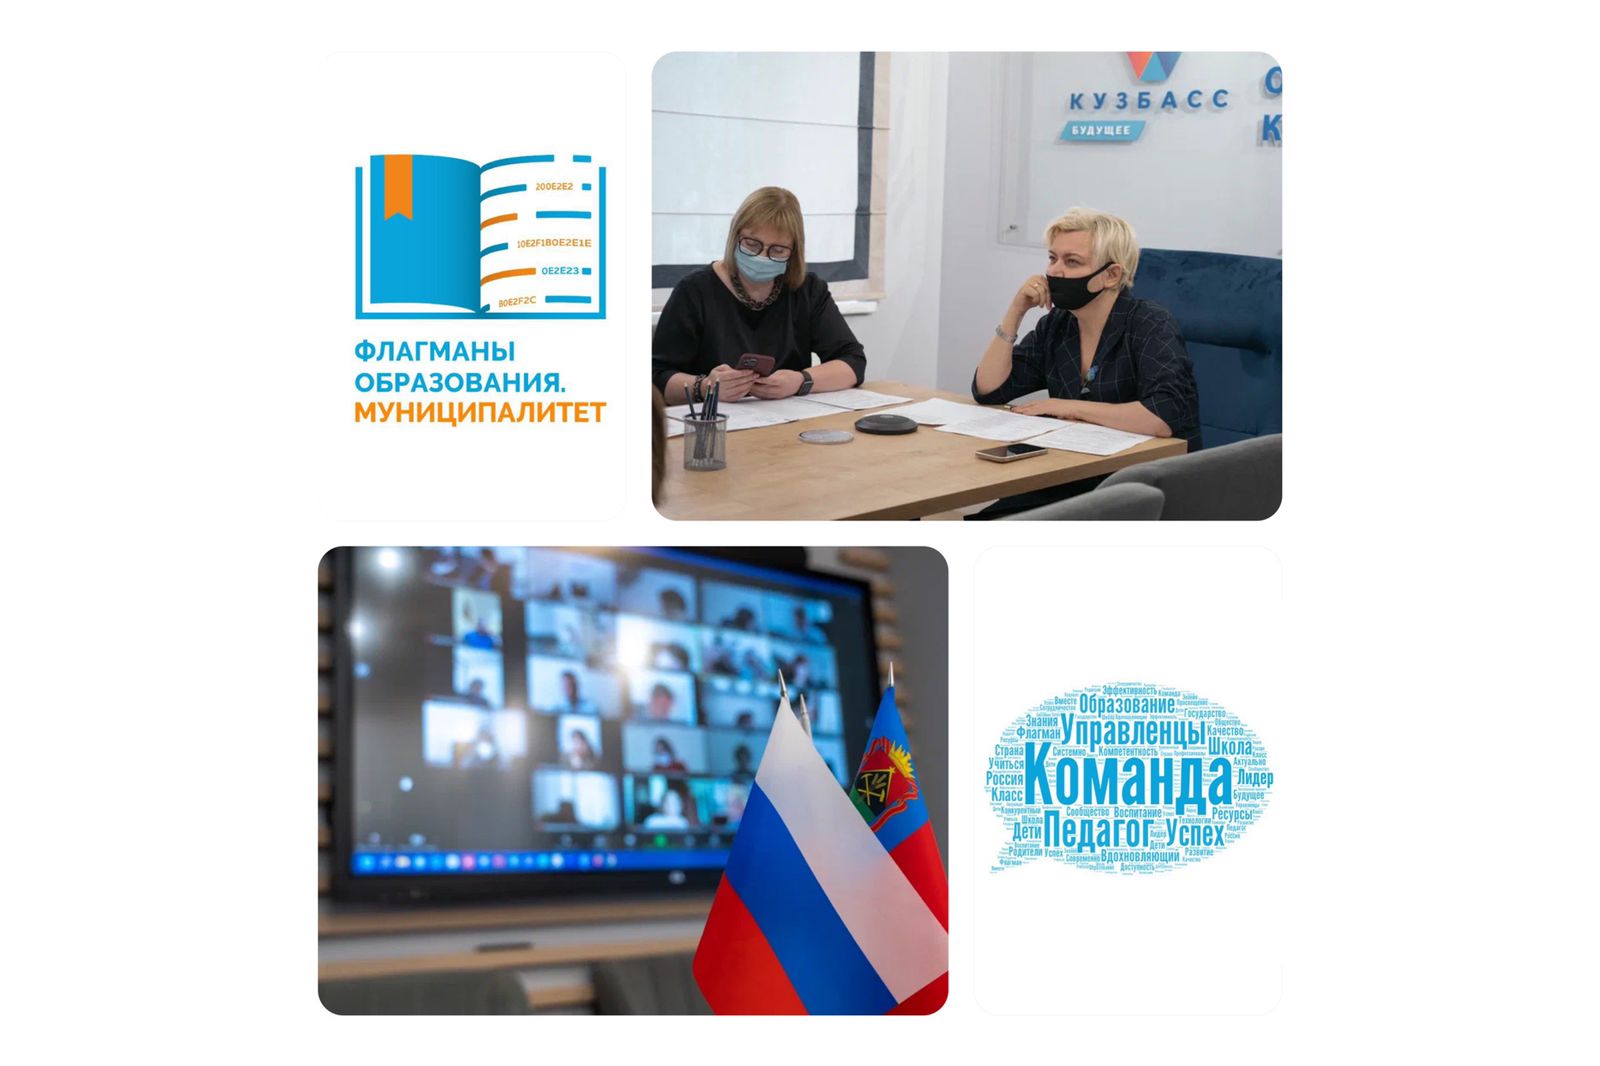 37 управленческих команд из Кузбасса принимают участие во Всероссийском конкурсе «Флагманы образования. Муниципалитет»